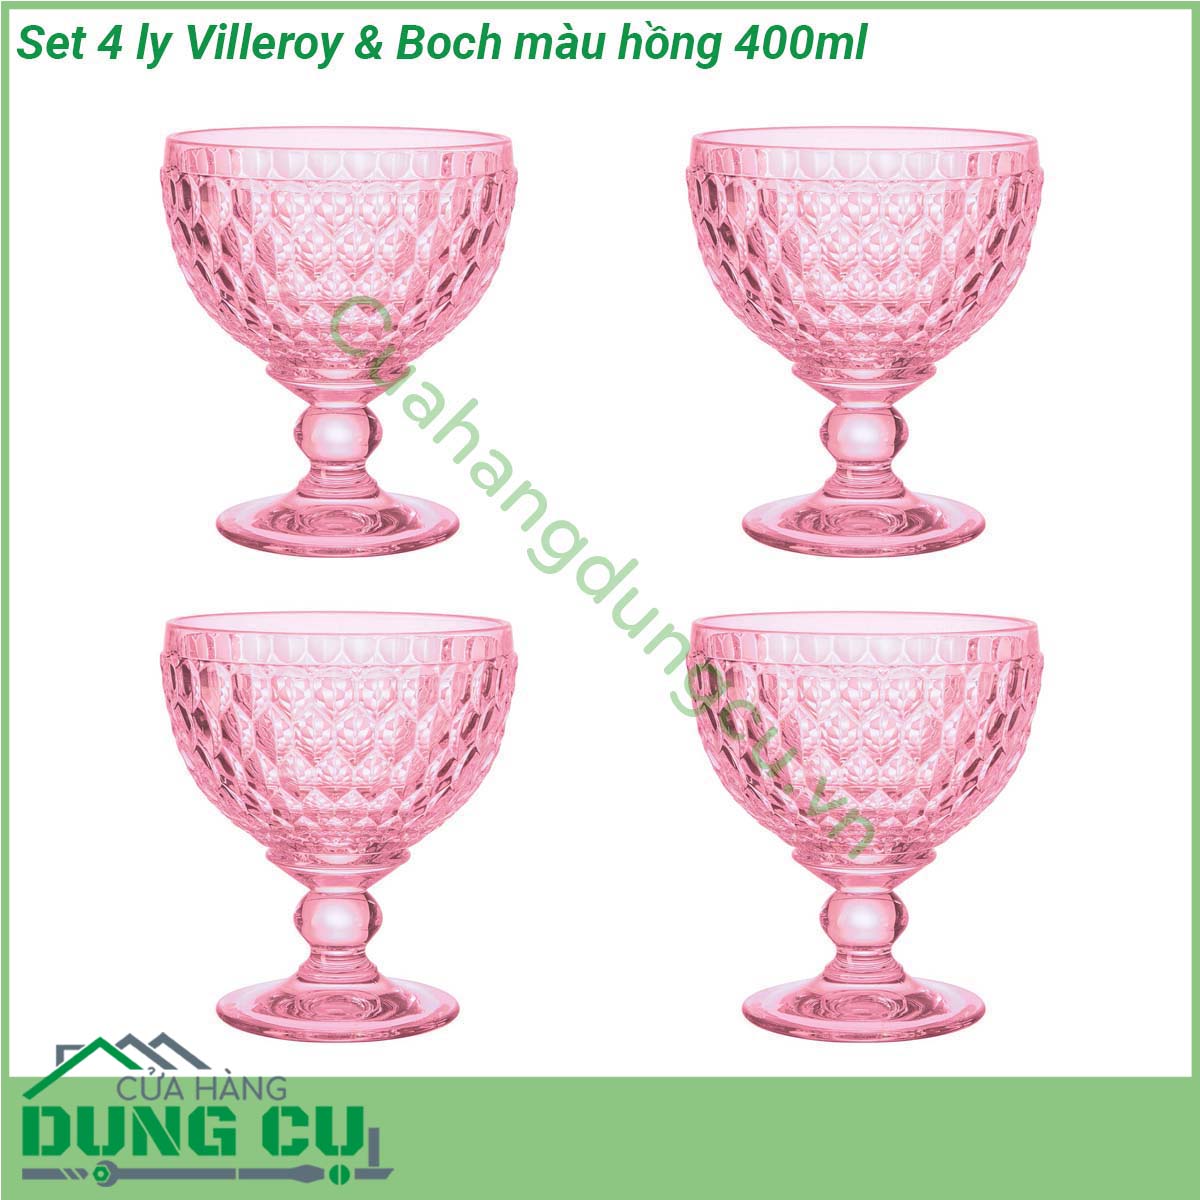 Set 4 ly Villeroy Boch màu hồng 400ml là sự kết hợp hoàn hảo giữa hình dáng cổ điển hiện đại và những gam màu đẹp nhất từ ​​mùa hè sang mùa đông Ly đa năng để đựng nước uống kem nước chanh hoa quả trái cây hoặc đồ uống lạnh khác thiết kế đô thị và các điểm nhấn màu bắt mắt